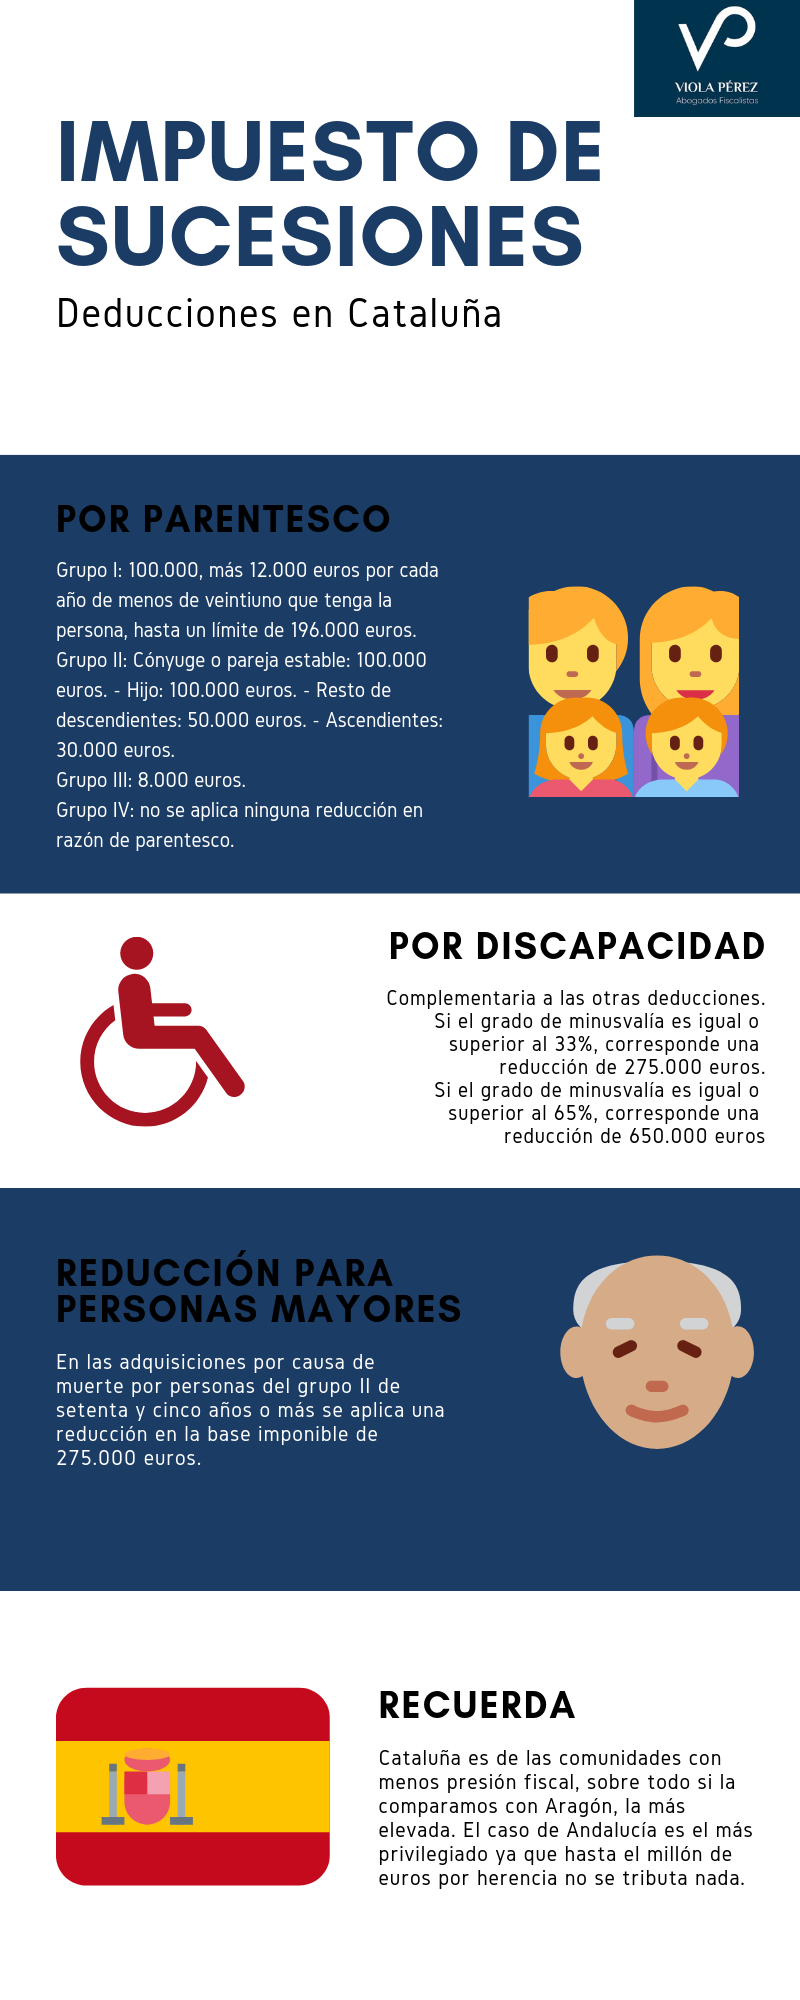 impuesto de sucesiones en Cataluña deducciones por parentesco, discapacidad y personas mayores